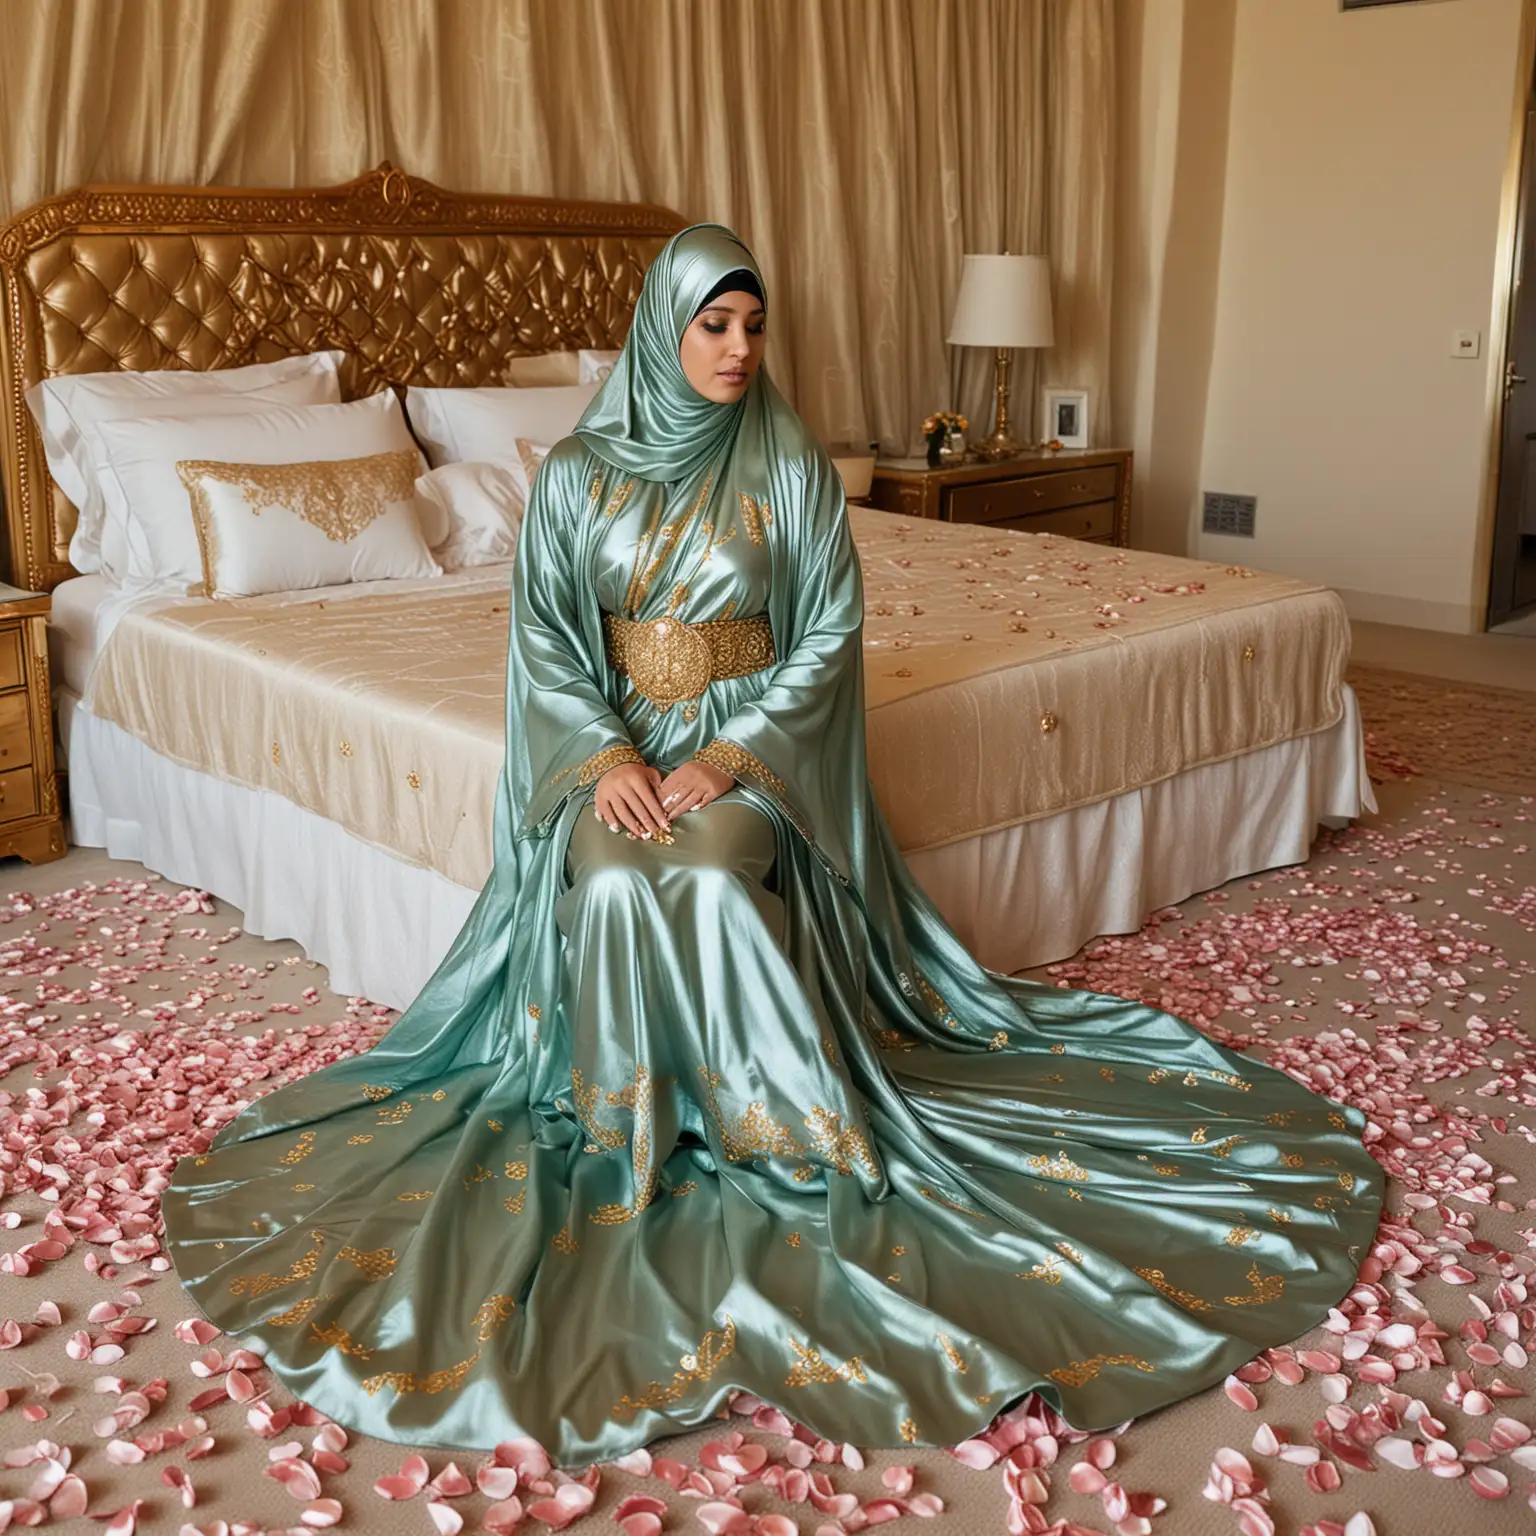 Pregnant Arab Princess in Teal Shimmer Metallic Abaya Walking Amid Rose Petals